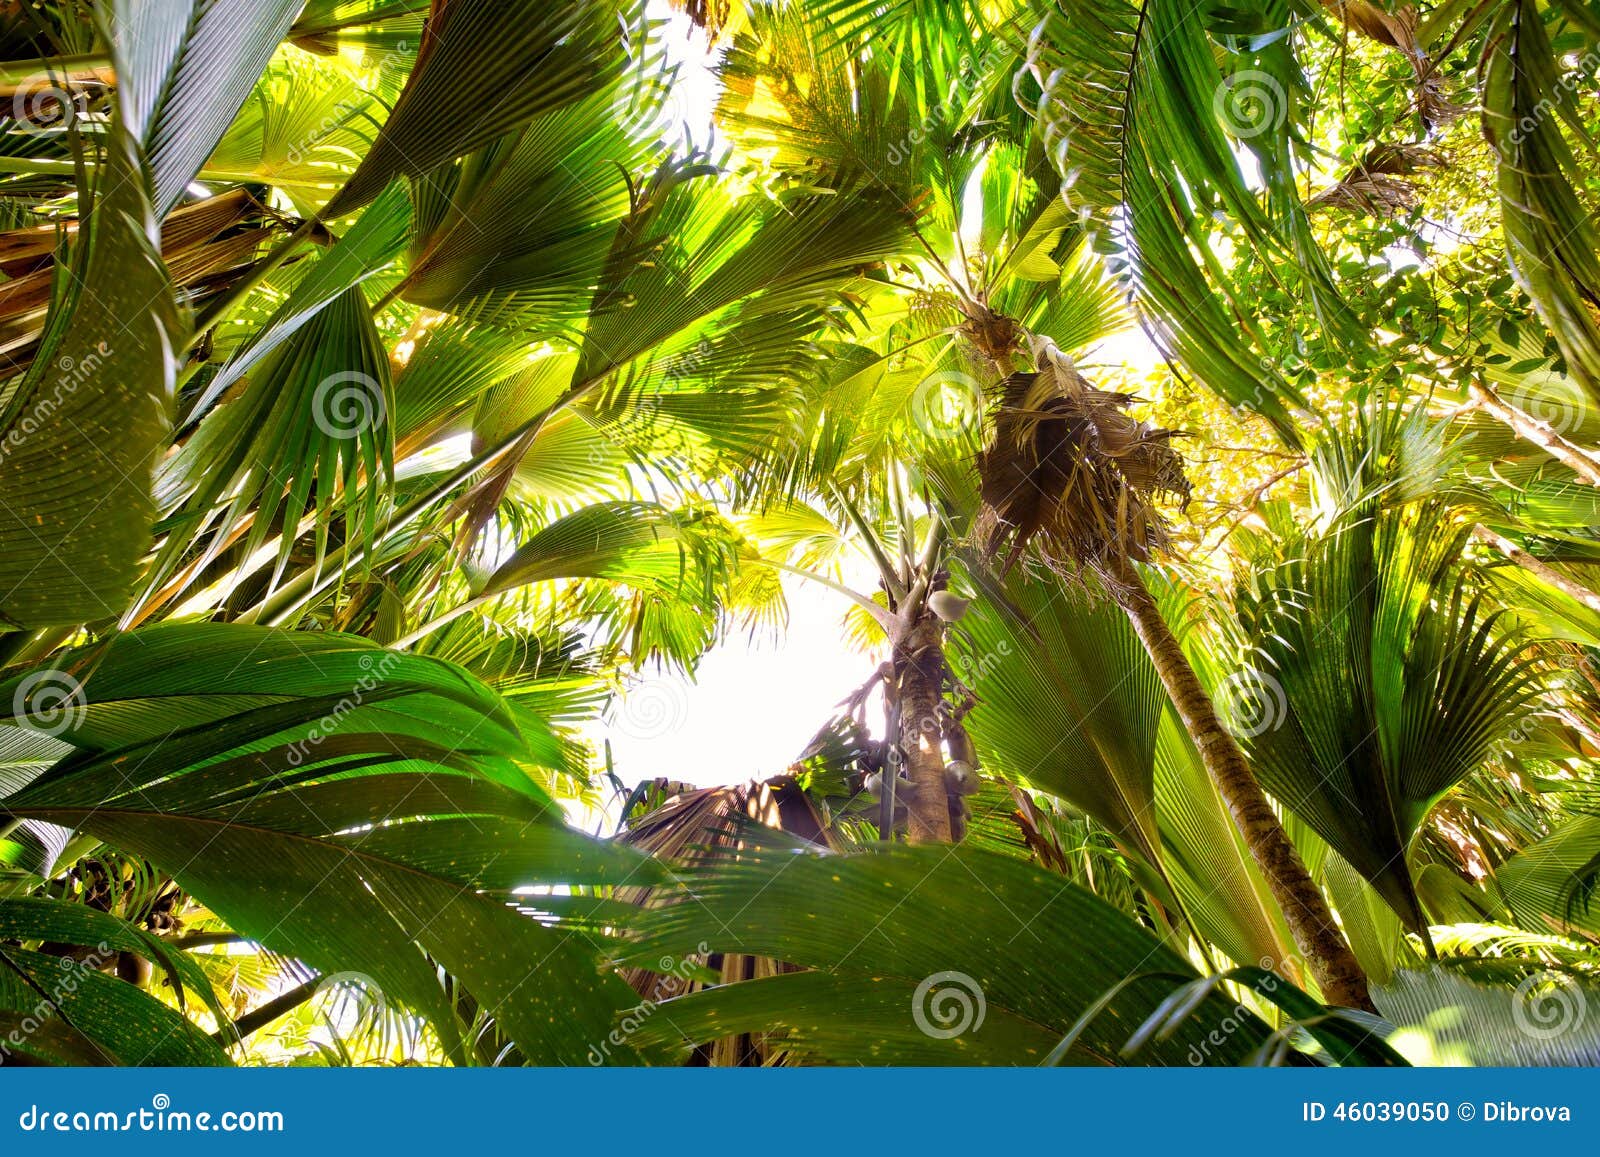 Palmen Coco de Mer stockfoto. Bild von nave, park, kabel - 46039050